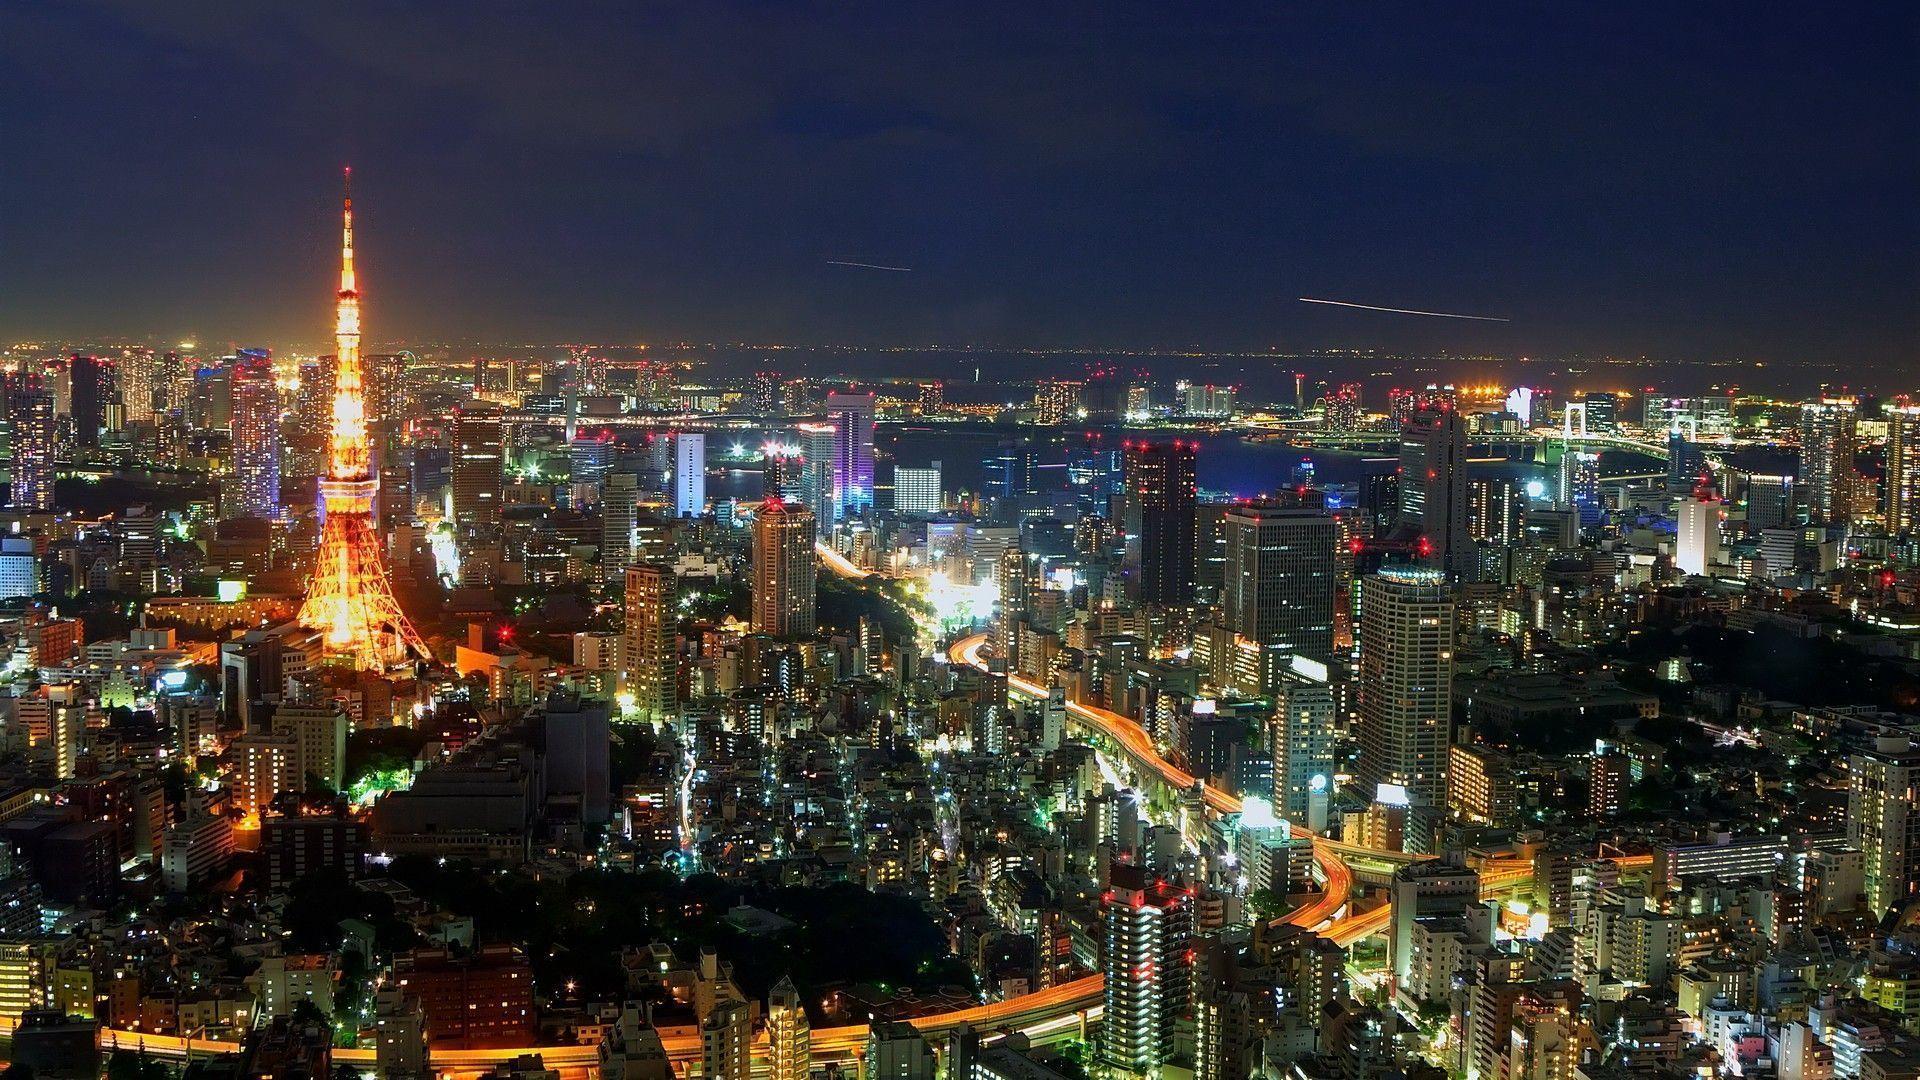 Japan Tokyo at Night Wallpapers - Top Free Japan Tokyo at Night